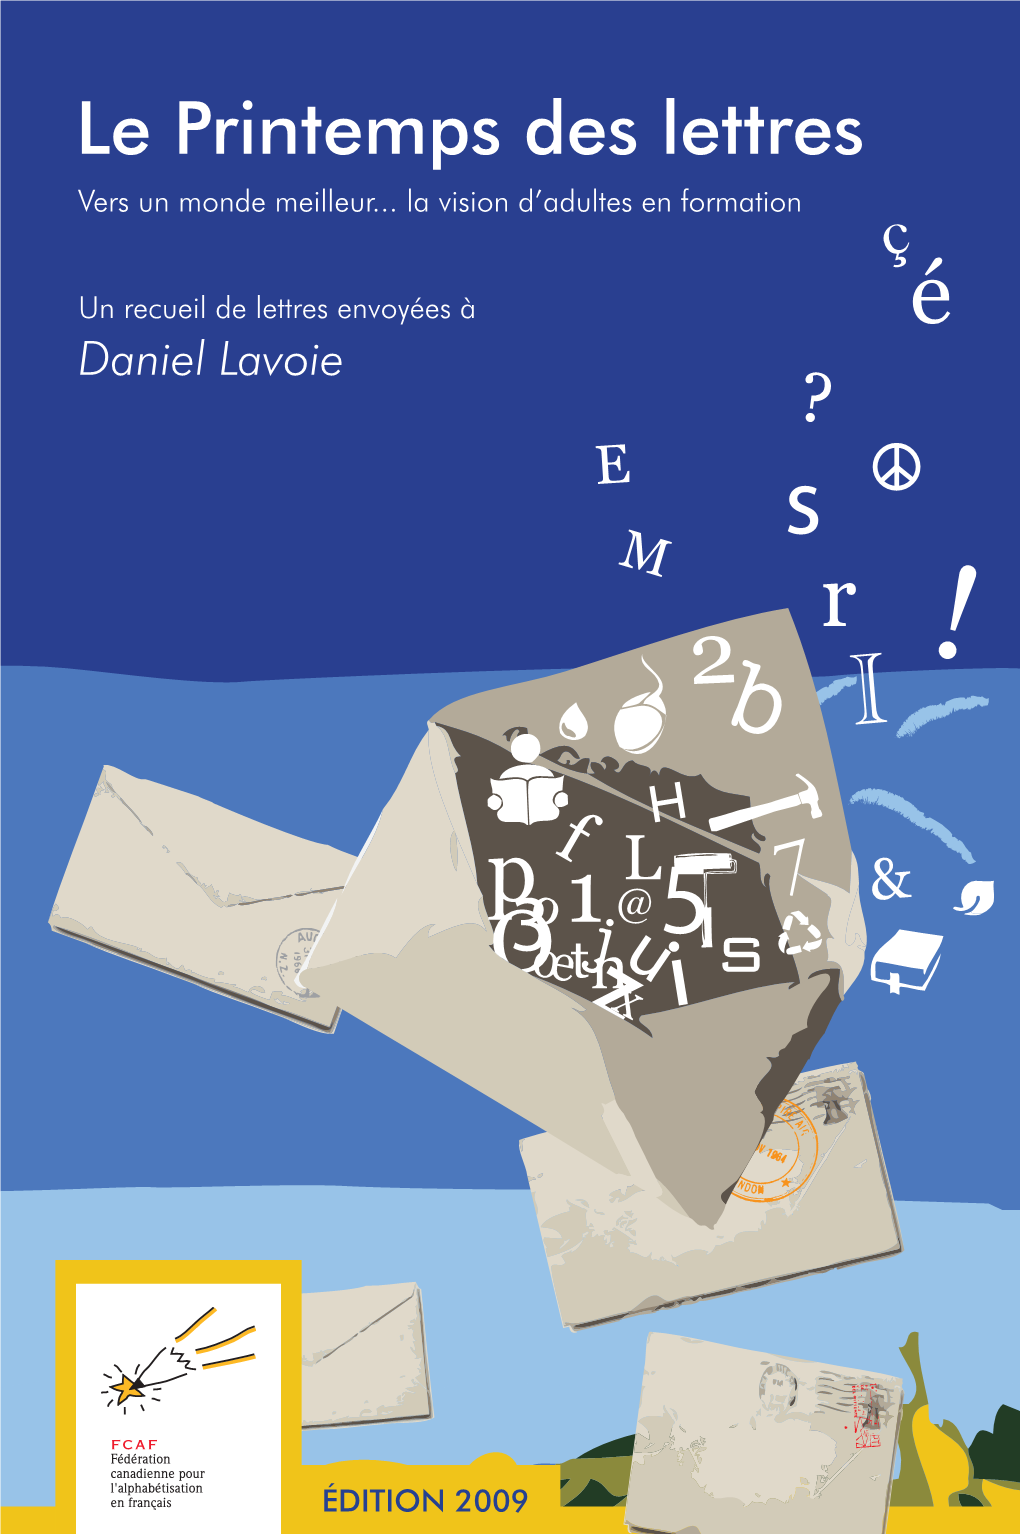 Daniel Lavoie Daniel Lavoie Est Un Auteur-Compositeur-Interprète Bien Connu